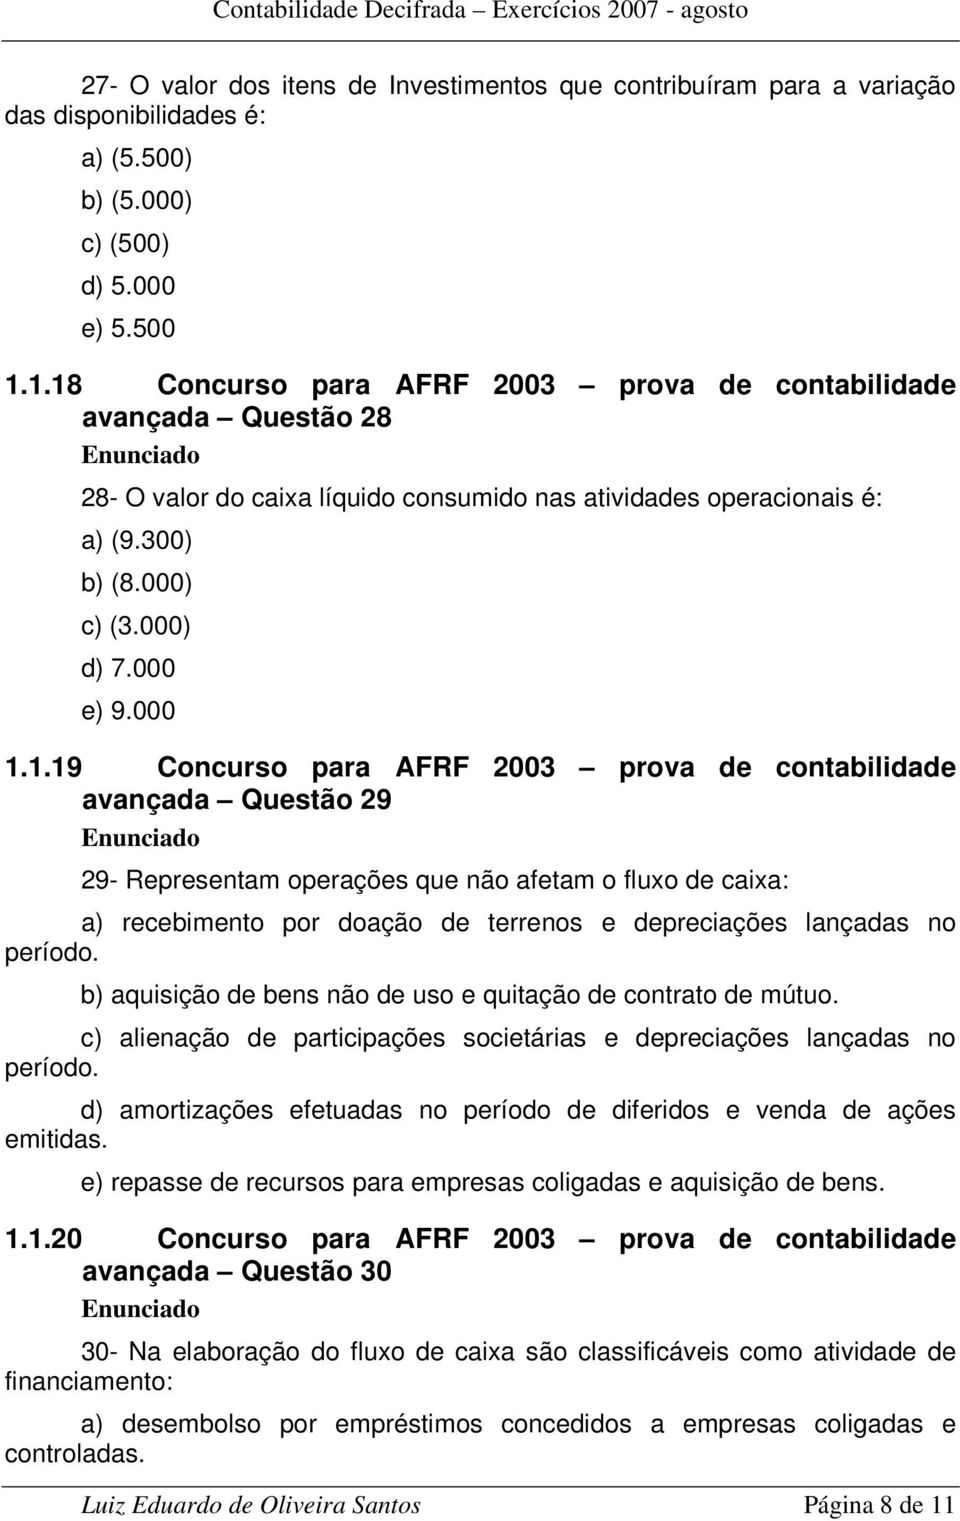 Concurso para AFRF 2003 prova de contabilidade avançada Questão 29 29- Representam operações que não afetam o fluxo de caixa: a) recebimento por doação de terrenos e depreciações lançadas no período.